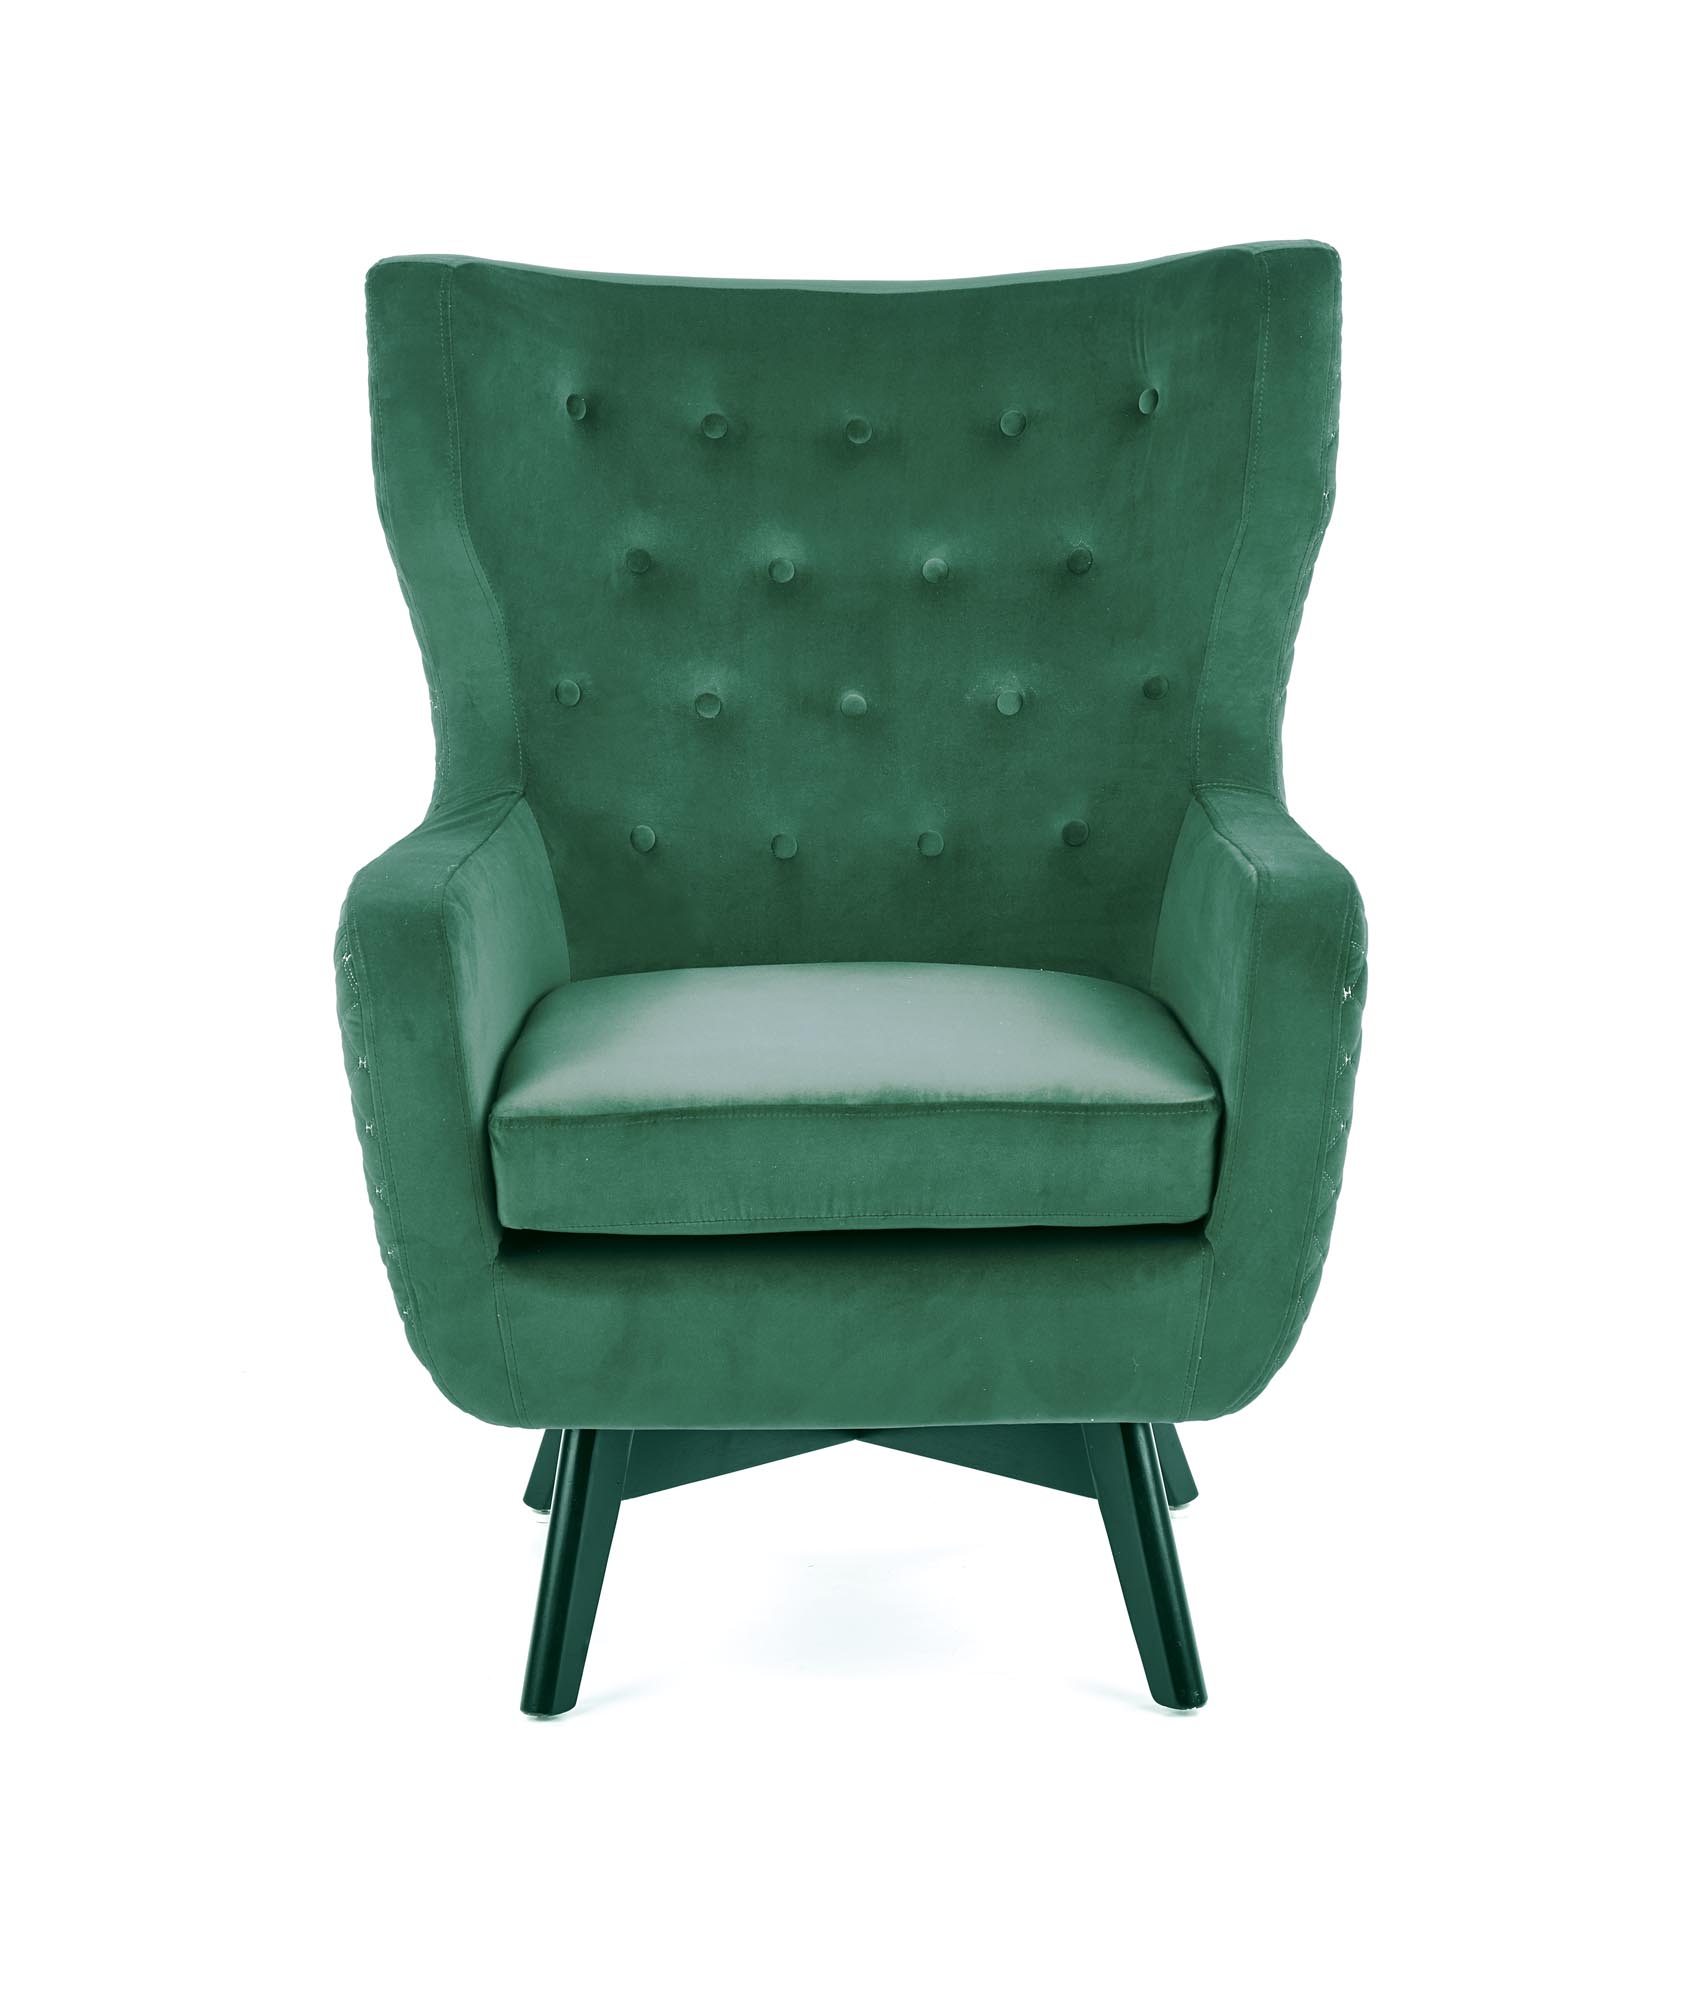 MARVEL fotel wypoczynkowy ciemny zielony / czarny marvel fotel wypoczynkowy ciemny zielony / czarny